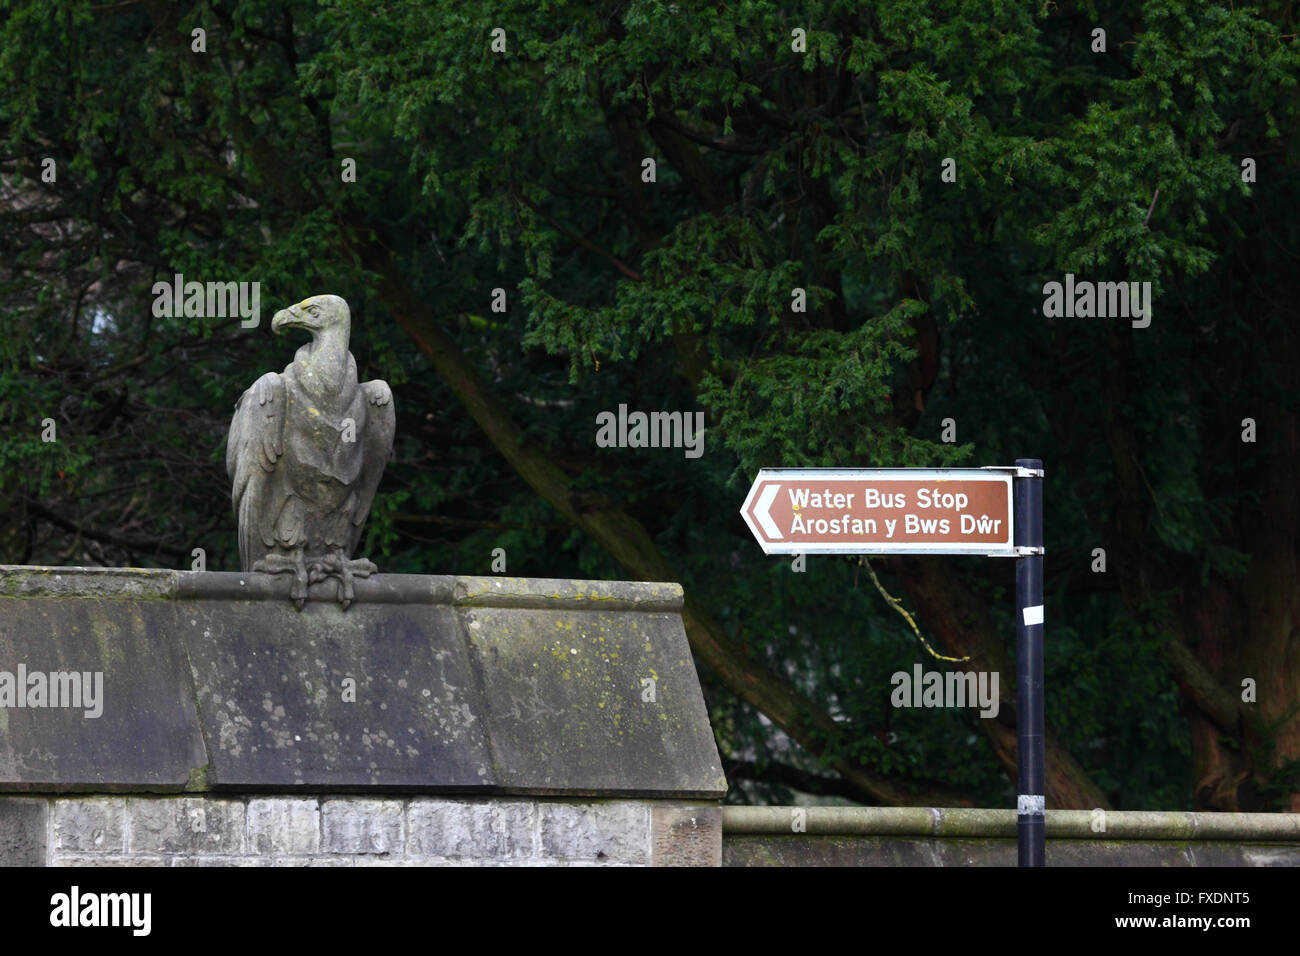 Stein Geier Skulptur Tier Wand und Zeichen für Wasser Bushaltestelle, Cardiff, South Glamorgan, Wales, Vereinigtes Königreich Stockfoto